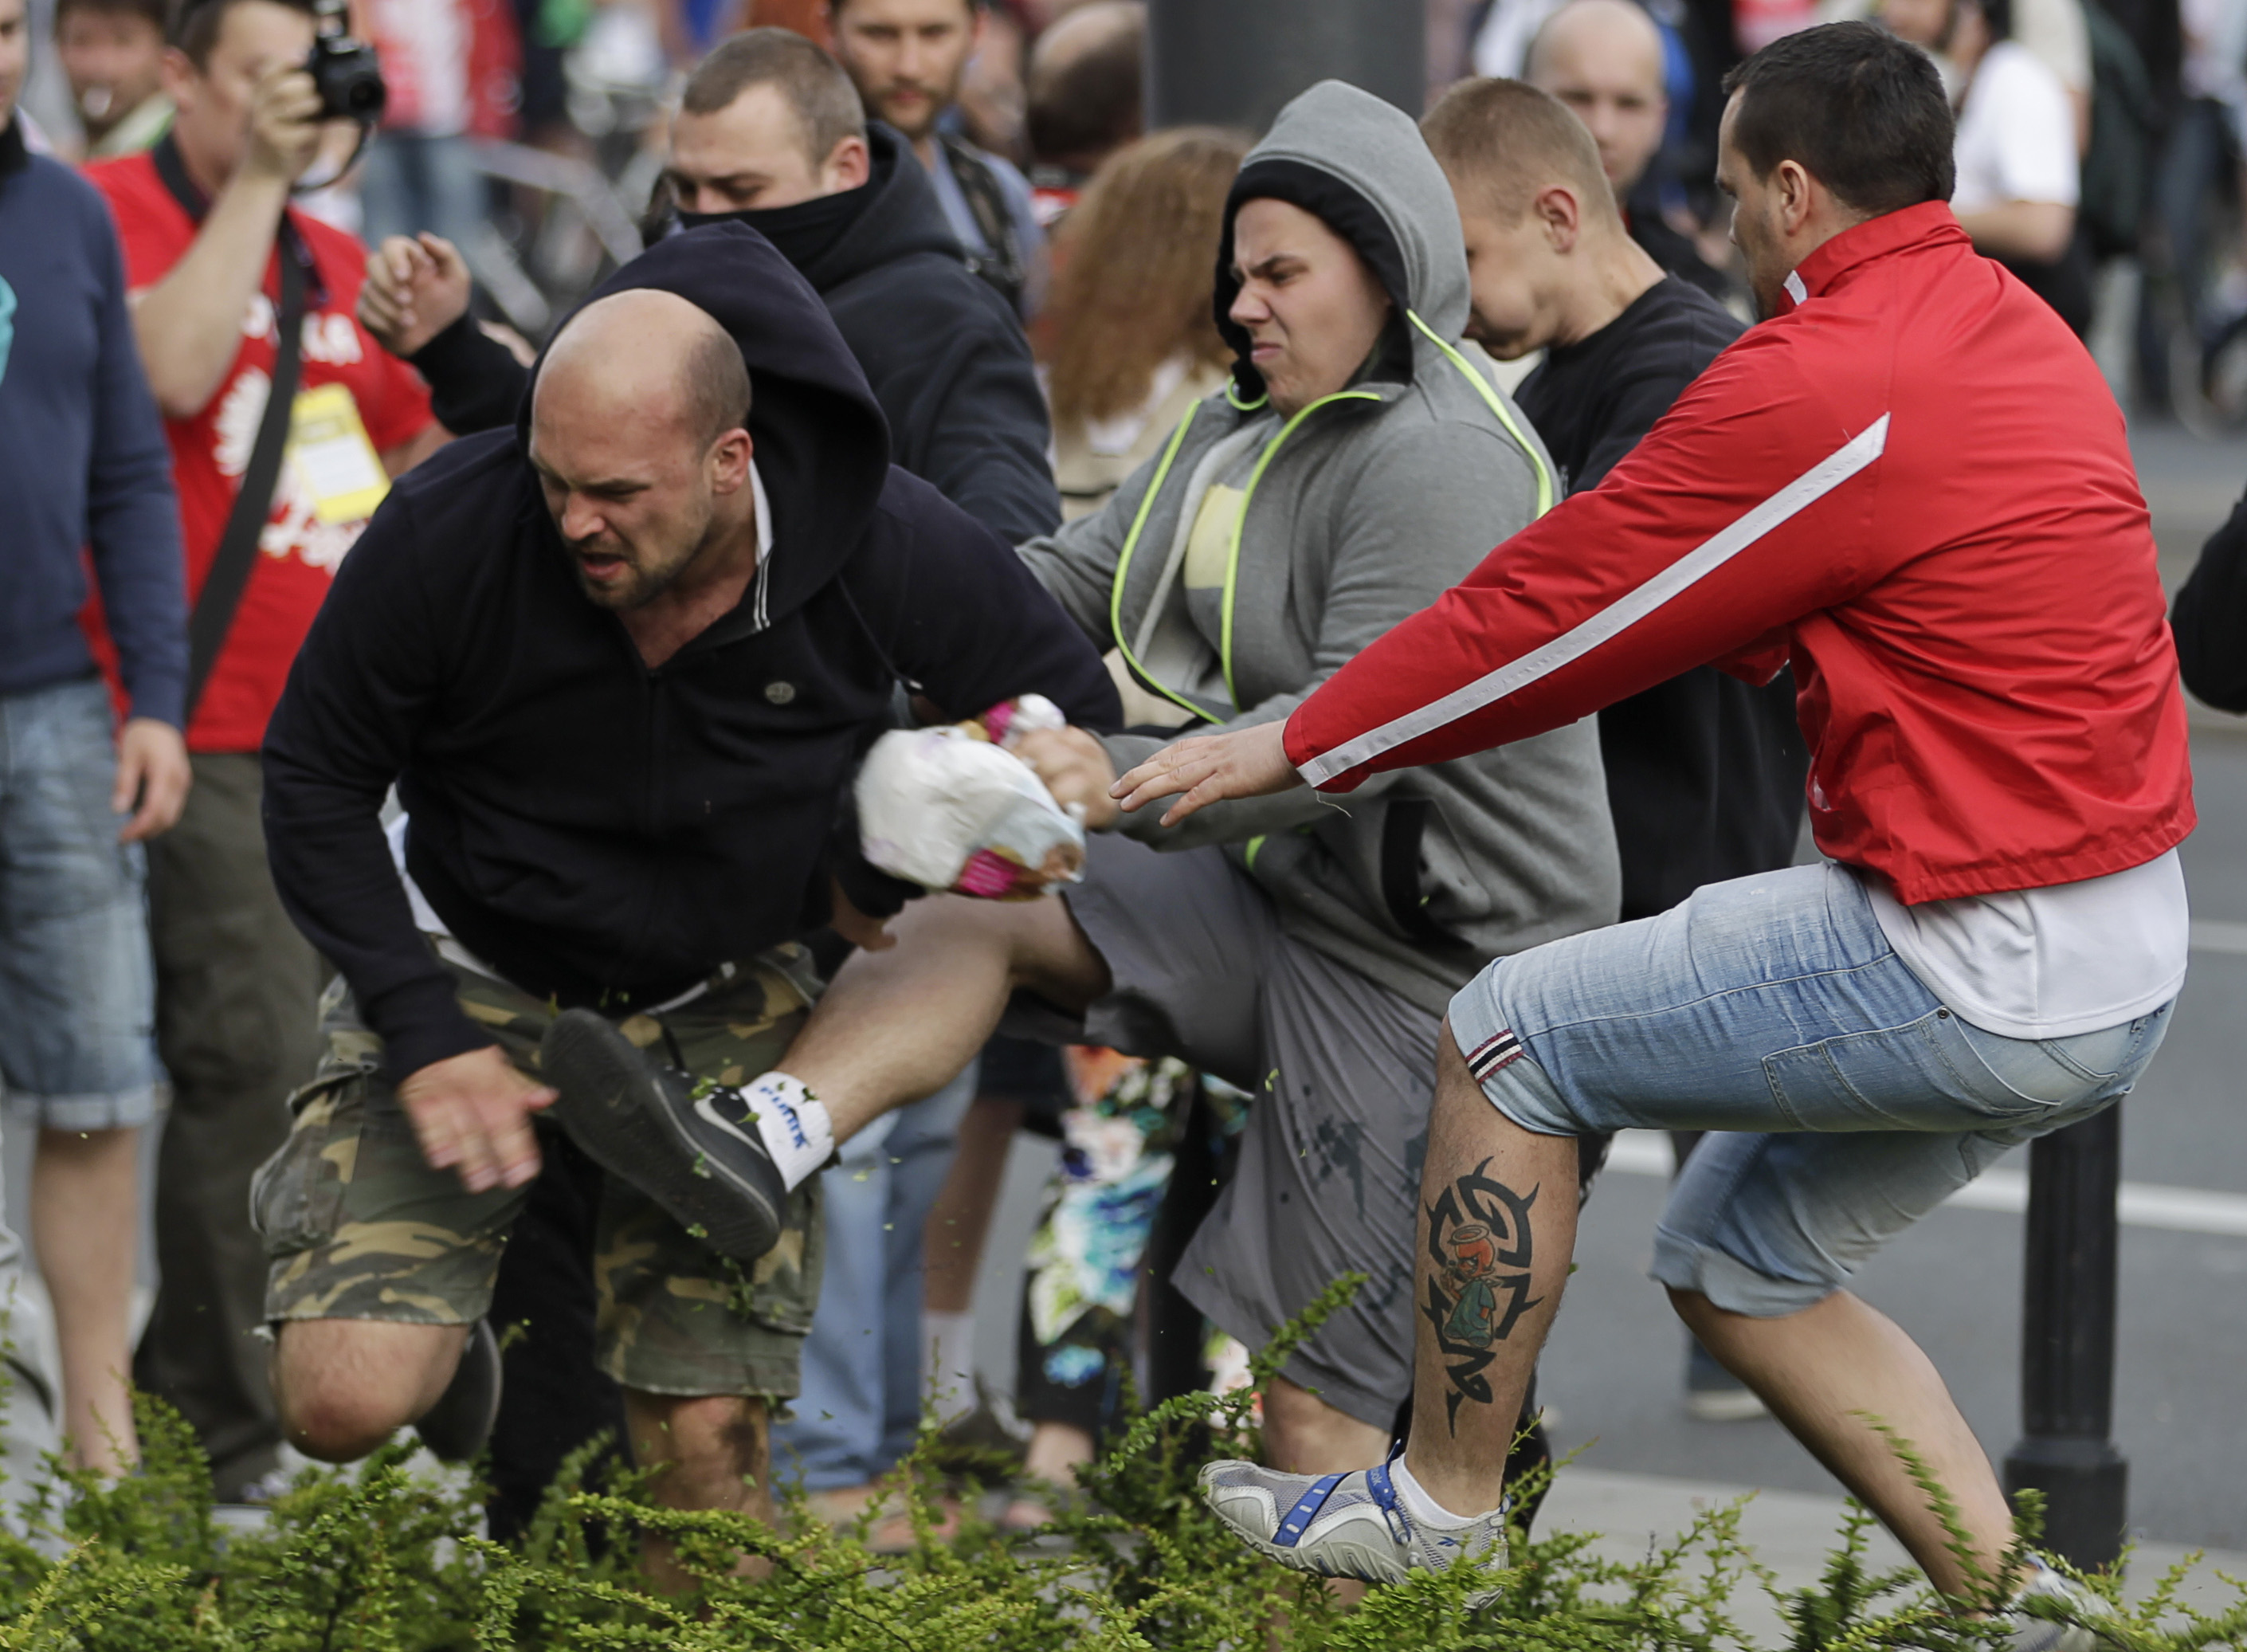 EM-matchen mellan Polen och Ryssland överskuggades av våldsamheter både före och efter matchen.